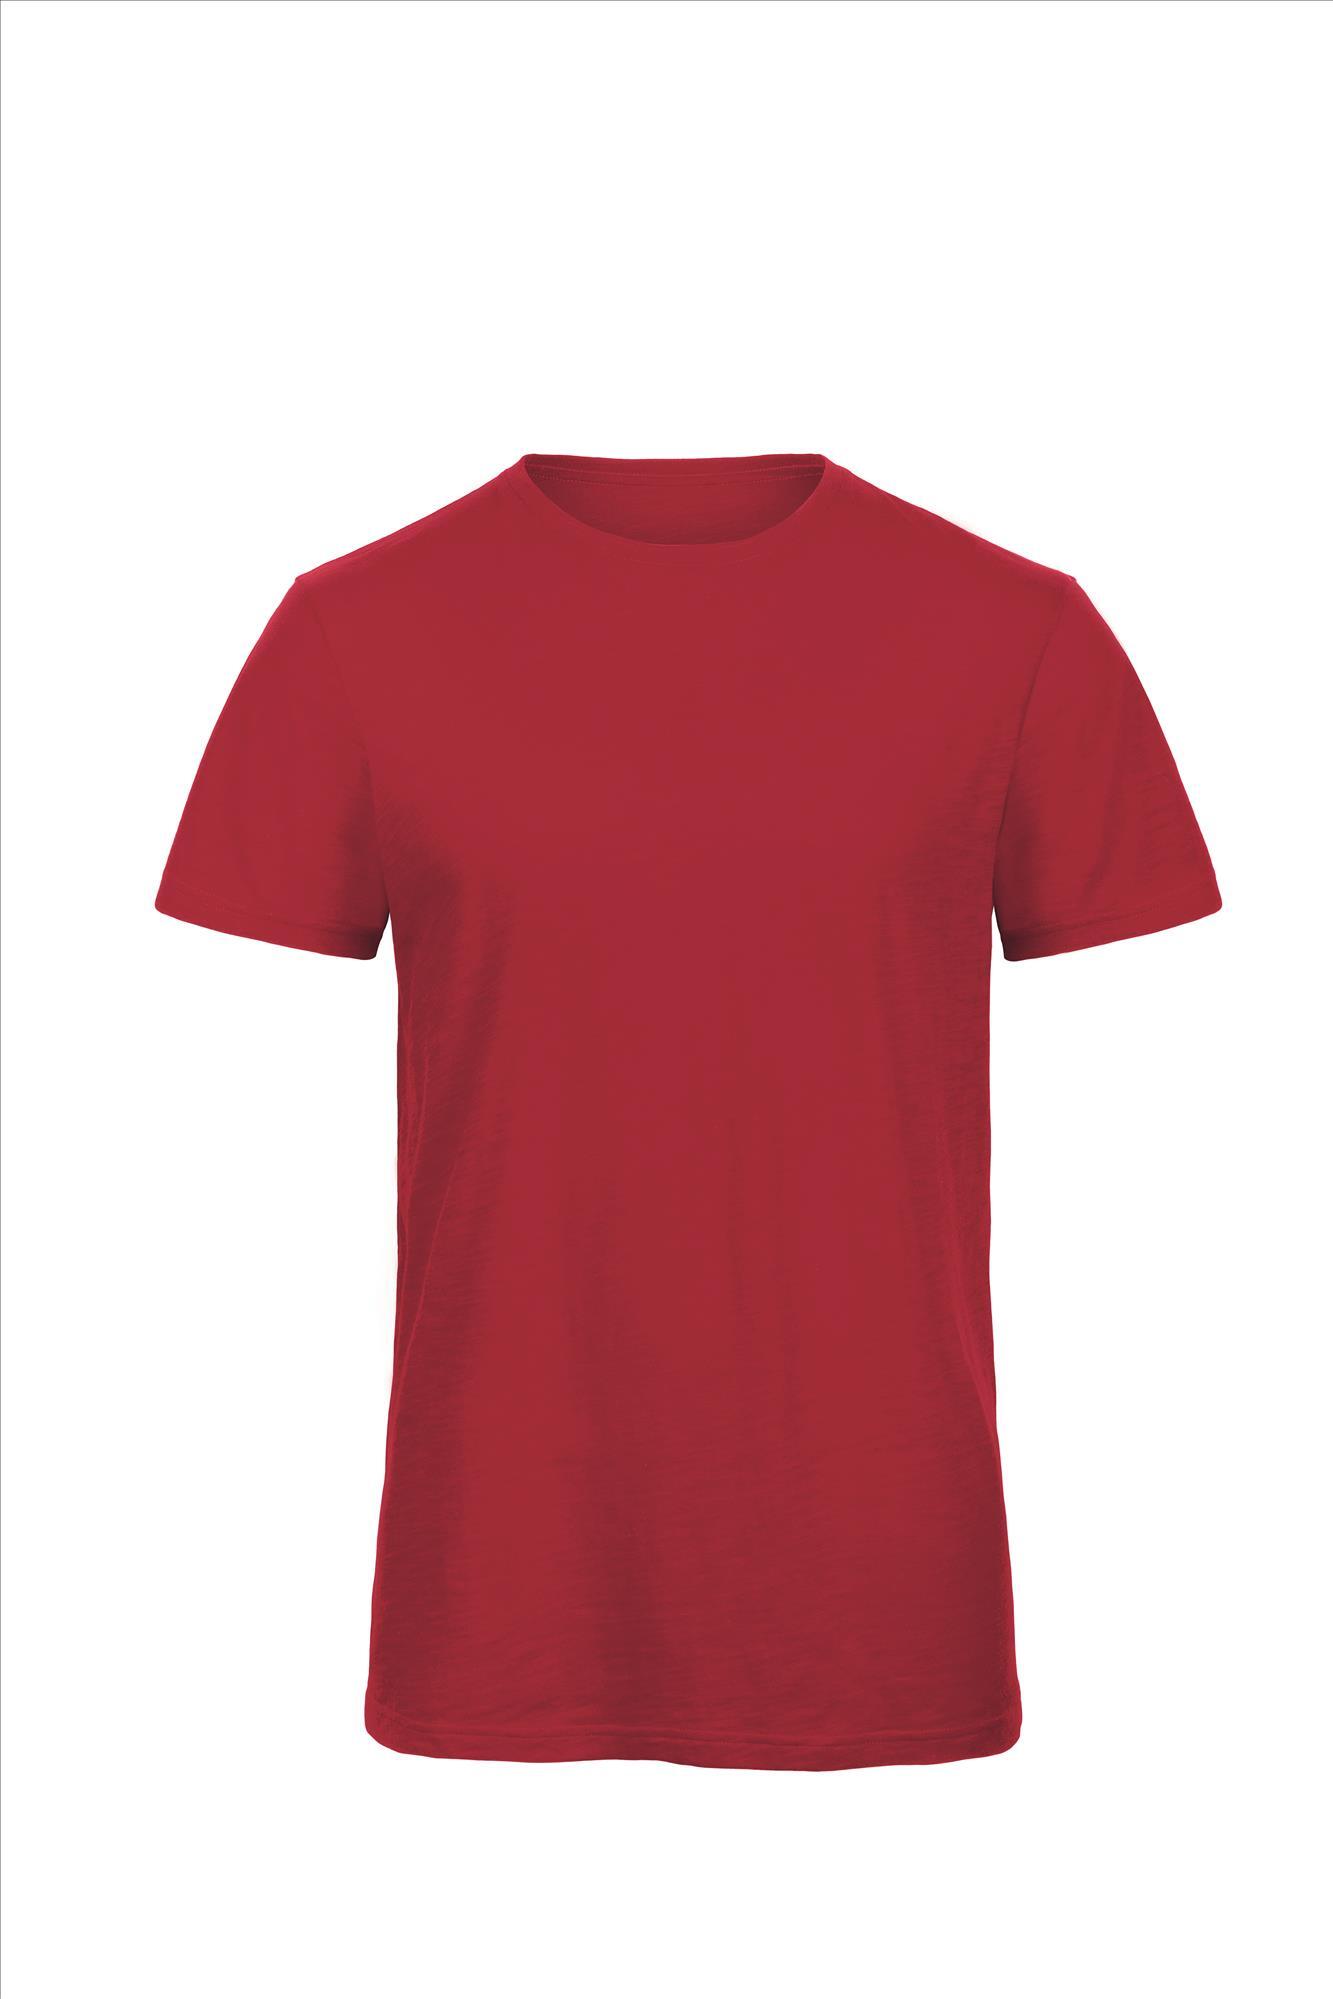 Heren T-shirt chic red korte mouw luxe biokwaliteit te personaliseren